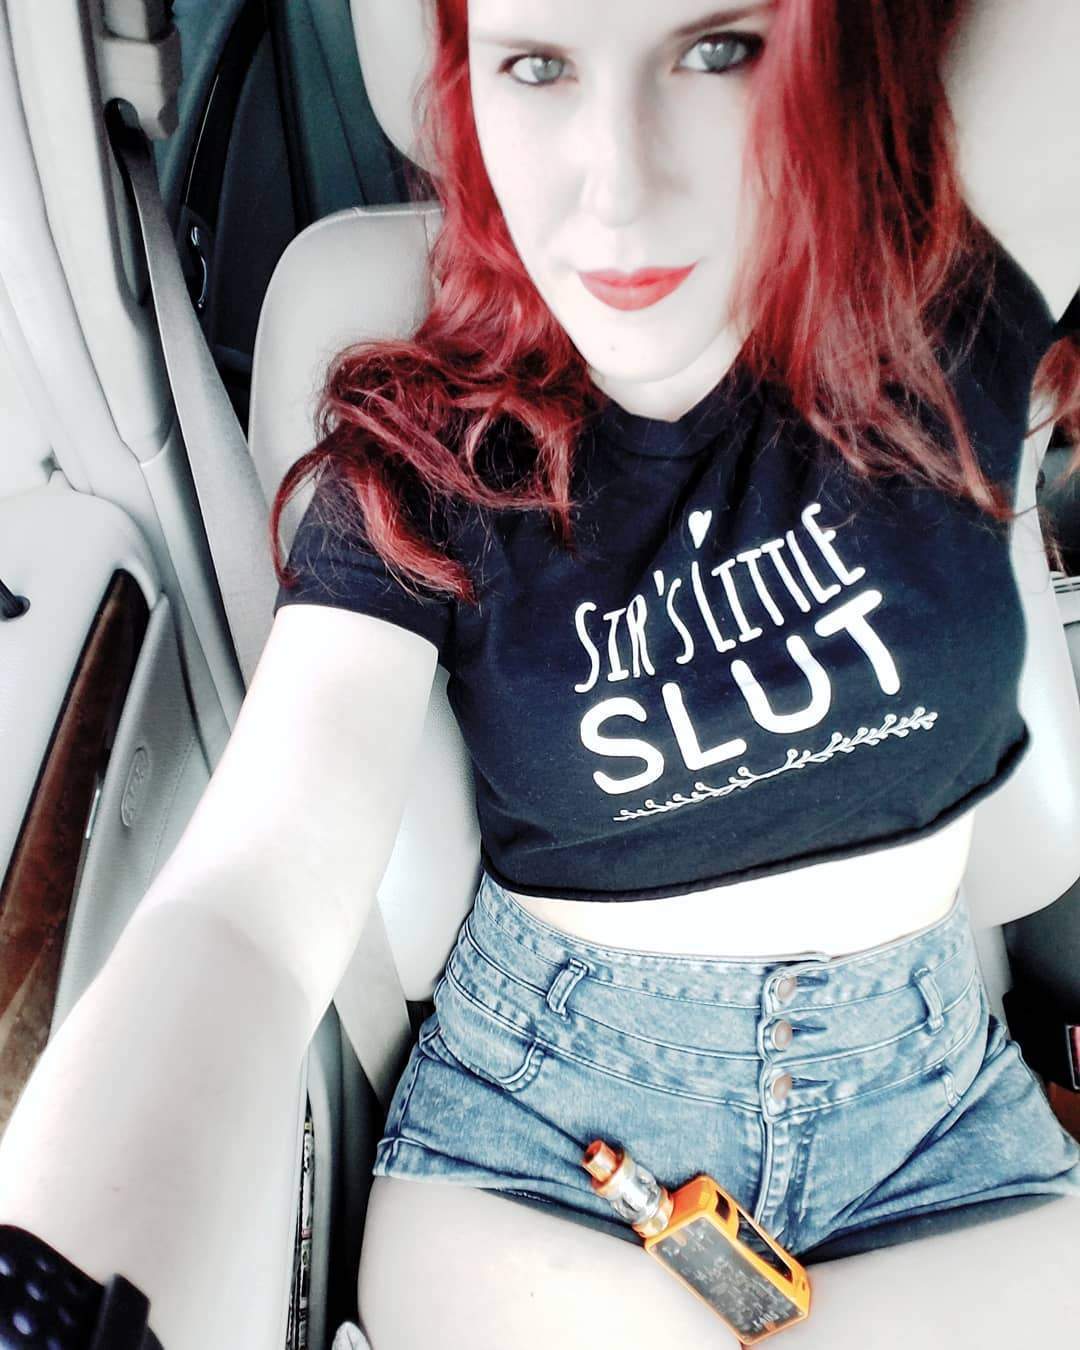 Little Slut S